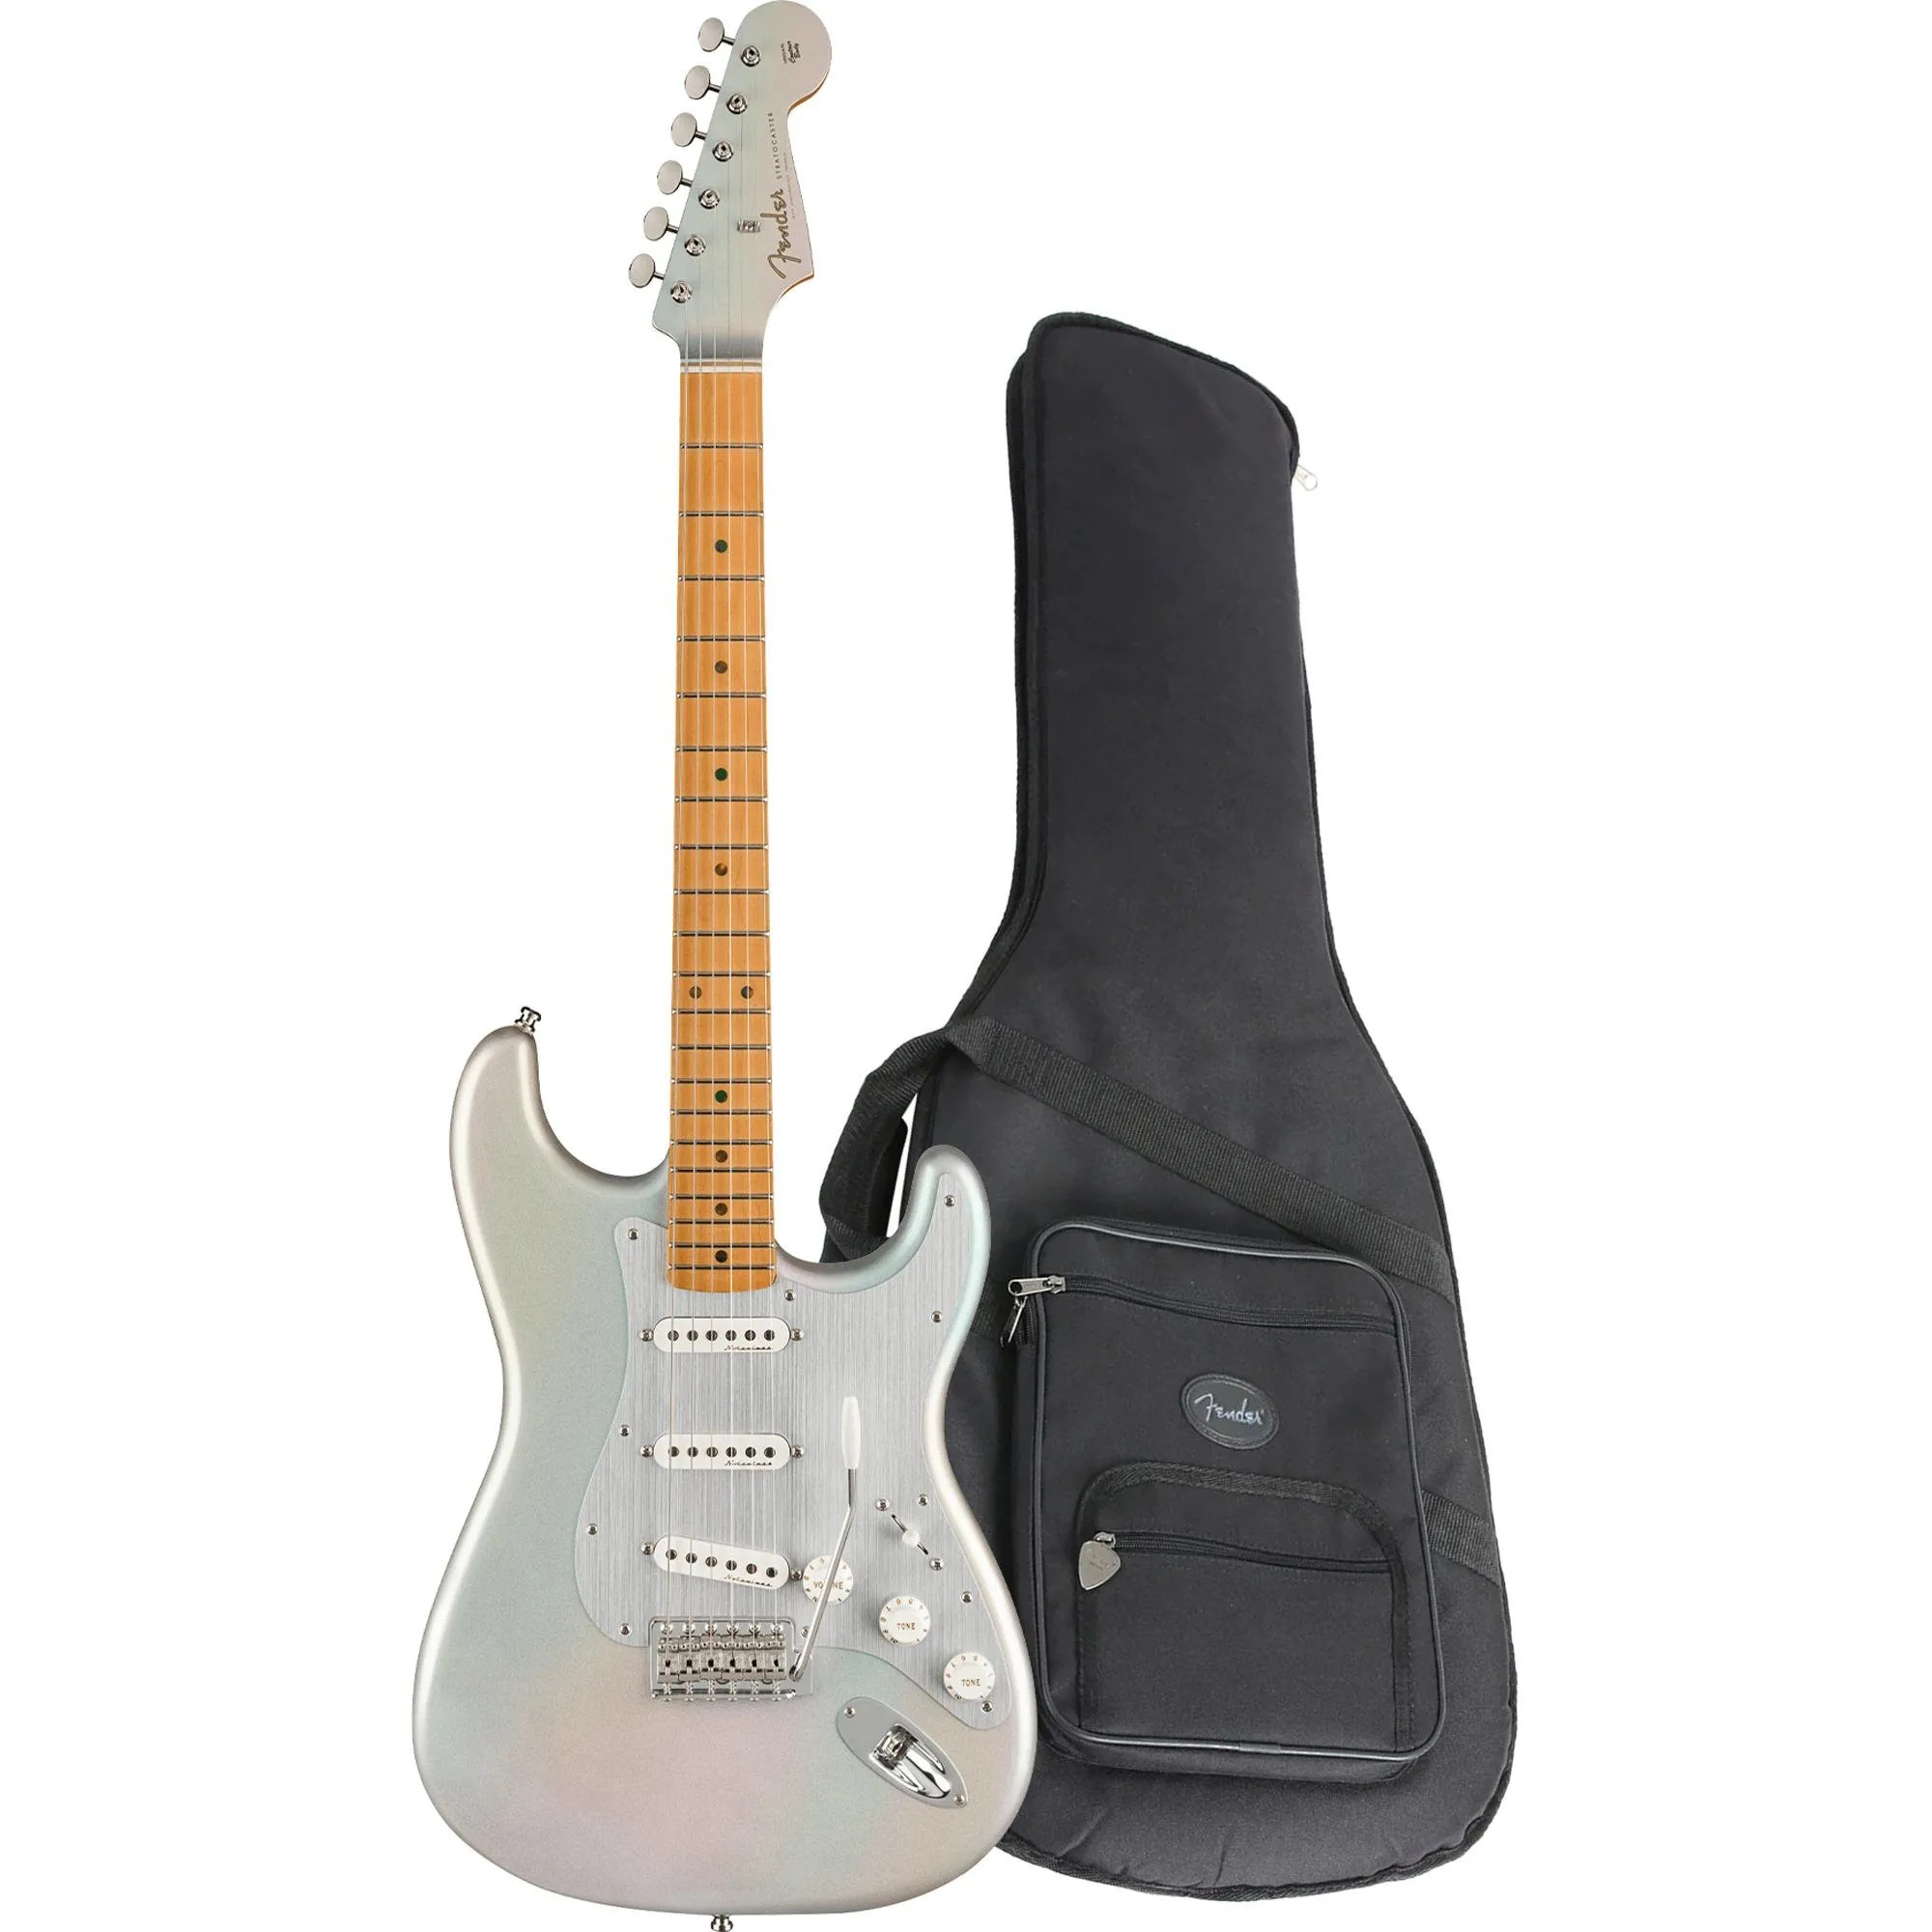 Guitarra Fender Stratocaster H.E.R Chrome Glow com Bag por 9.999,00 à vista no boleto/pix ou parcele em até 12x sem juros. Compre na loja Mundomax!